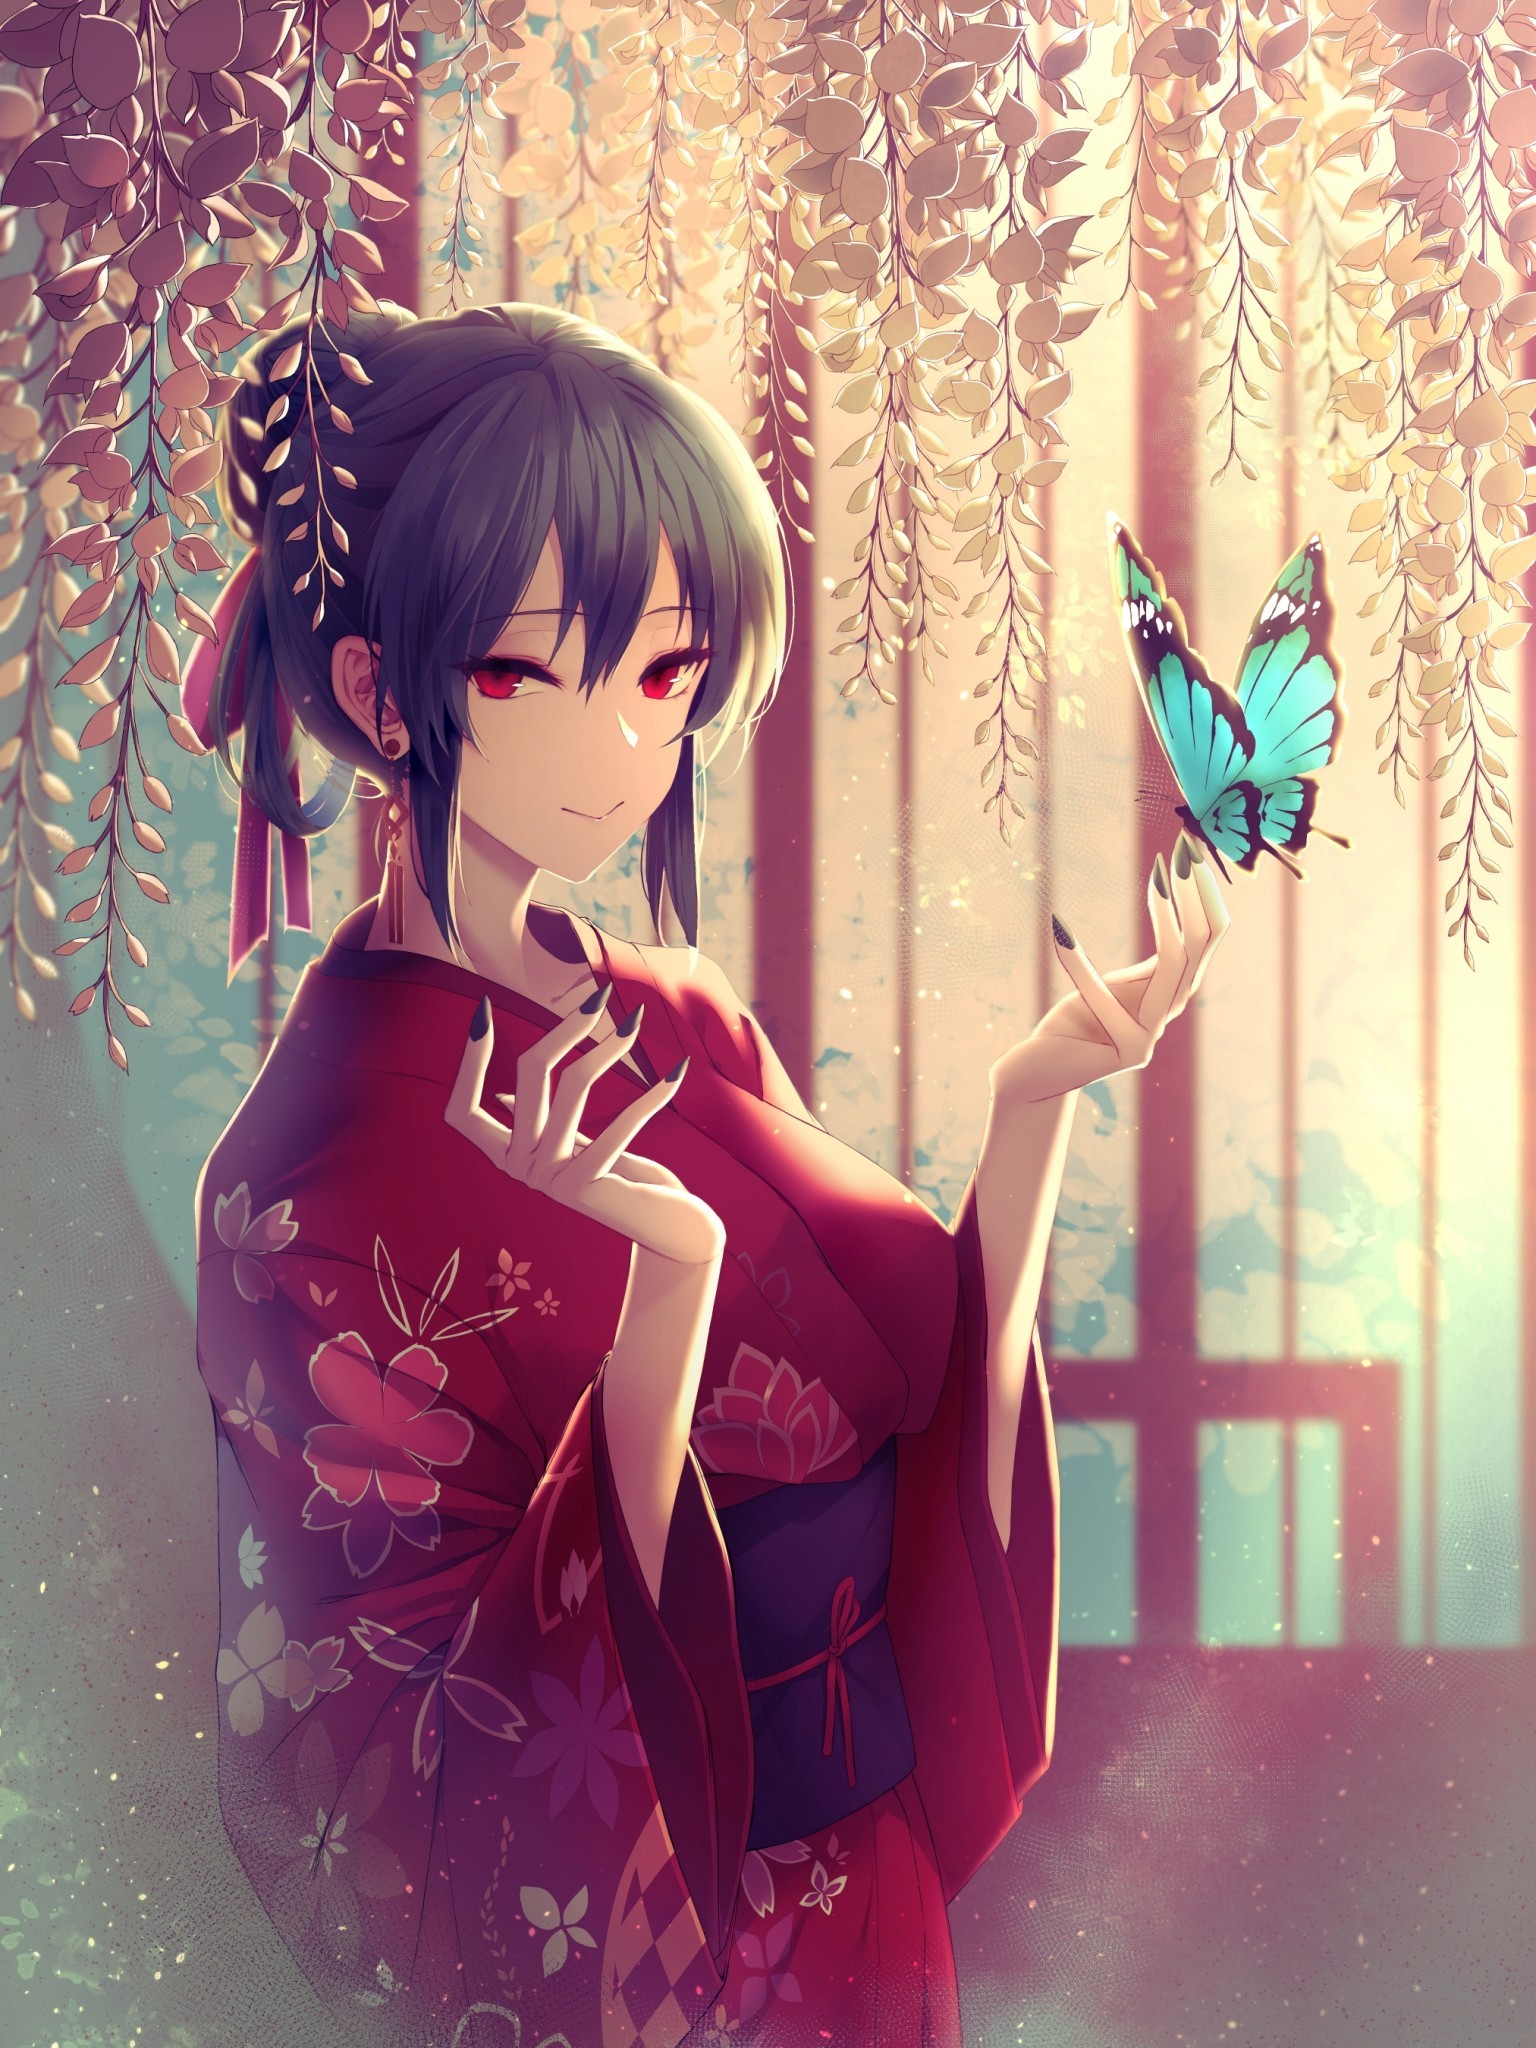 Anime Girl, Kimono, Blue Butterfly, Short Hair, Red - Short Black Hair Blue  Eyed Anime Girl - 1536x2048 Wallpaper 